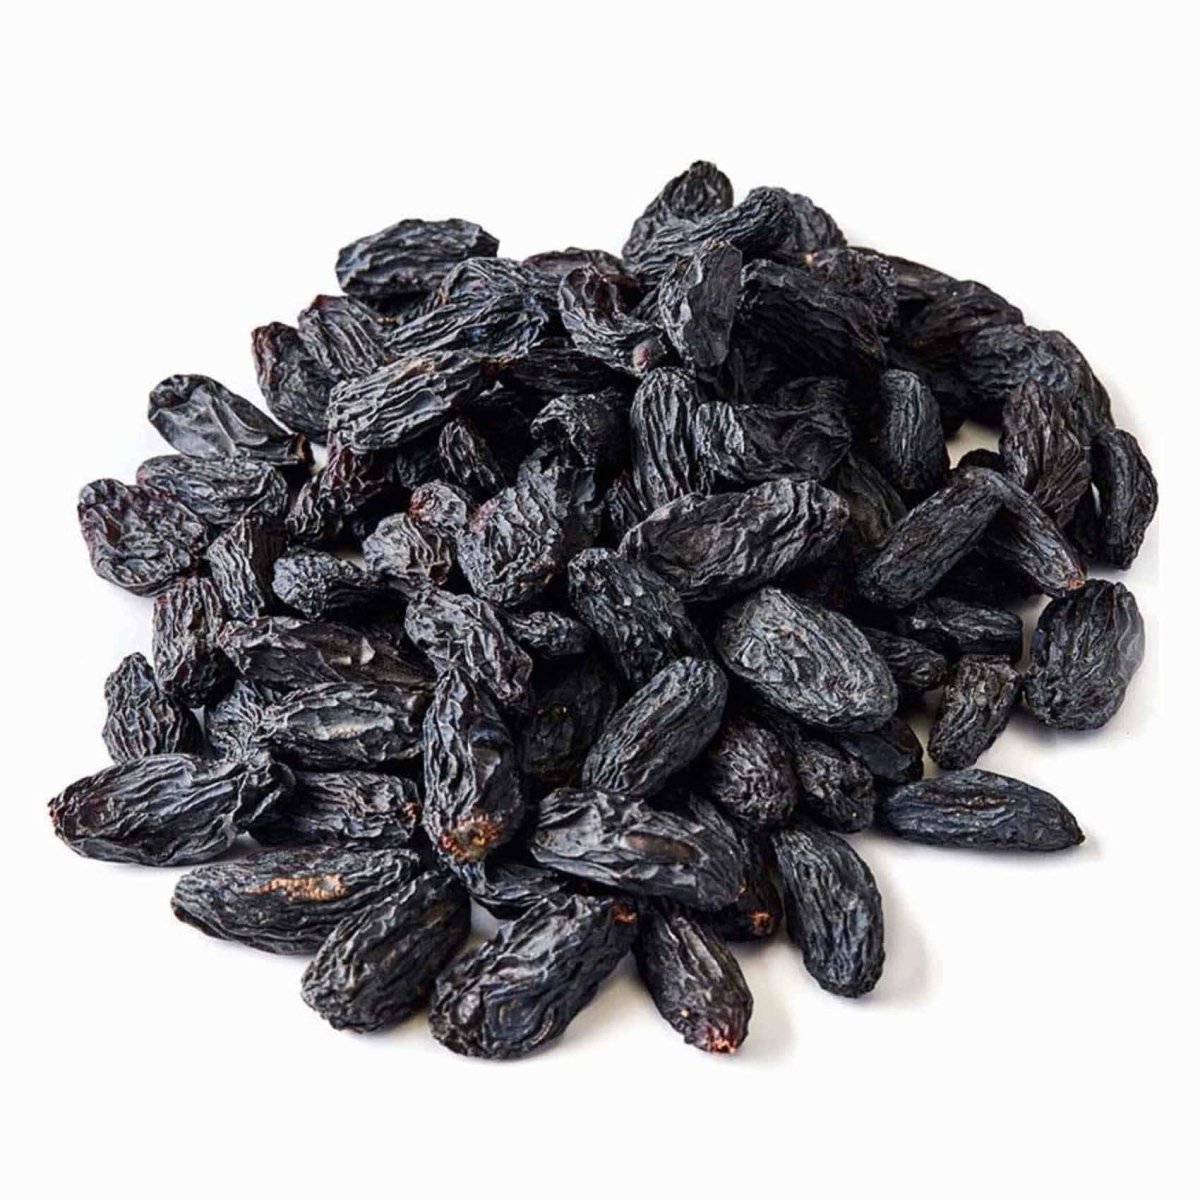 Black Raisins Jumbo - Tulsidas